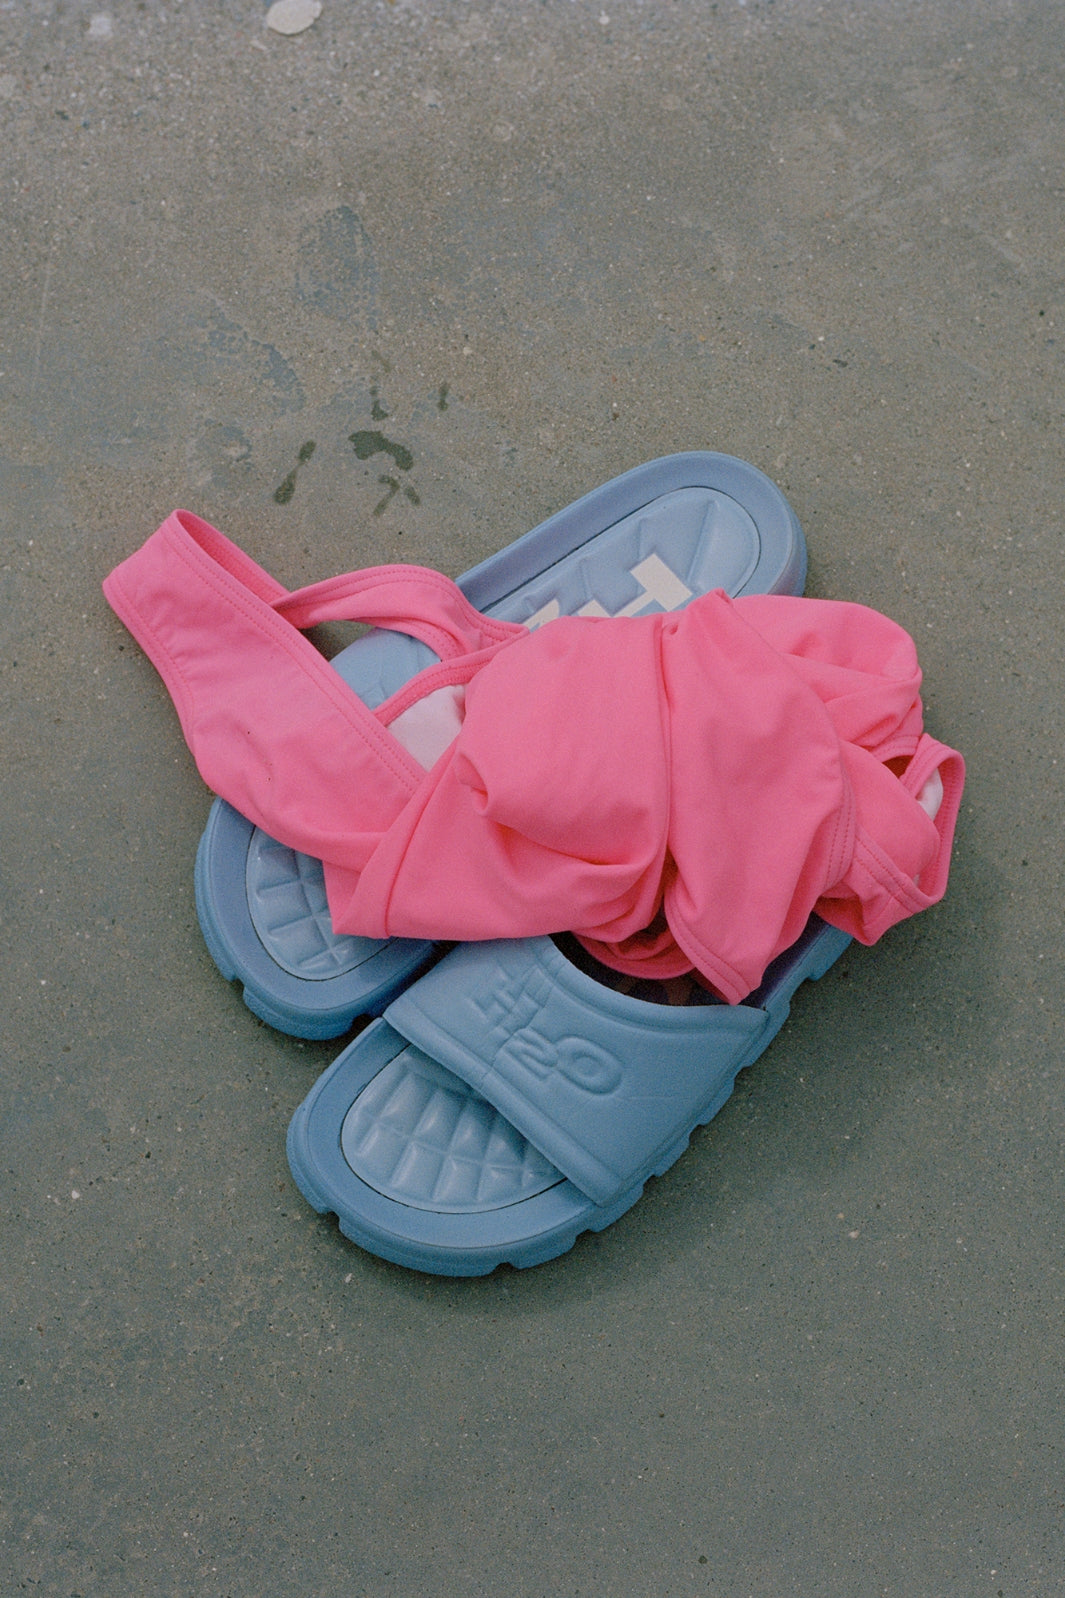 H2O - Tornø Swim Suit - 2016 Pink Badedragter 